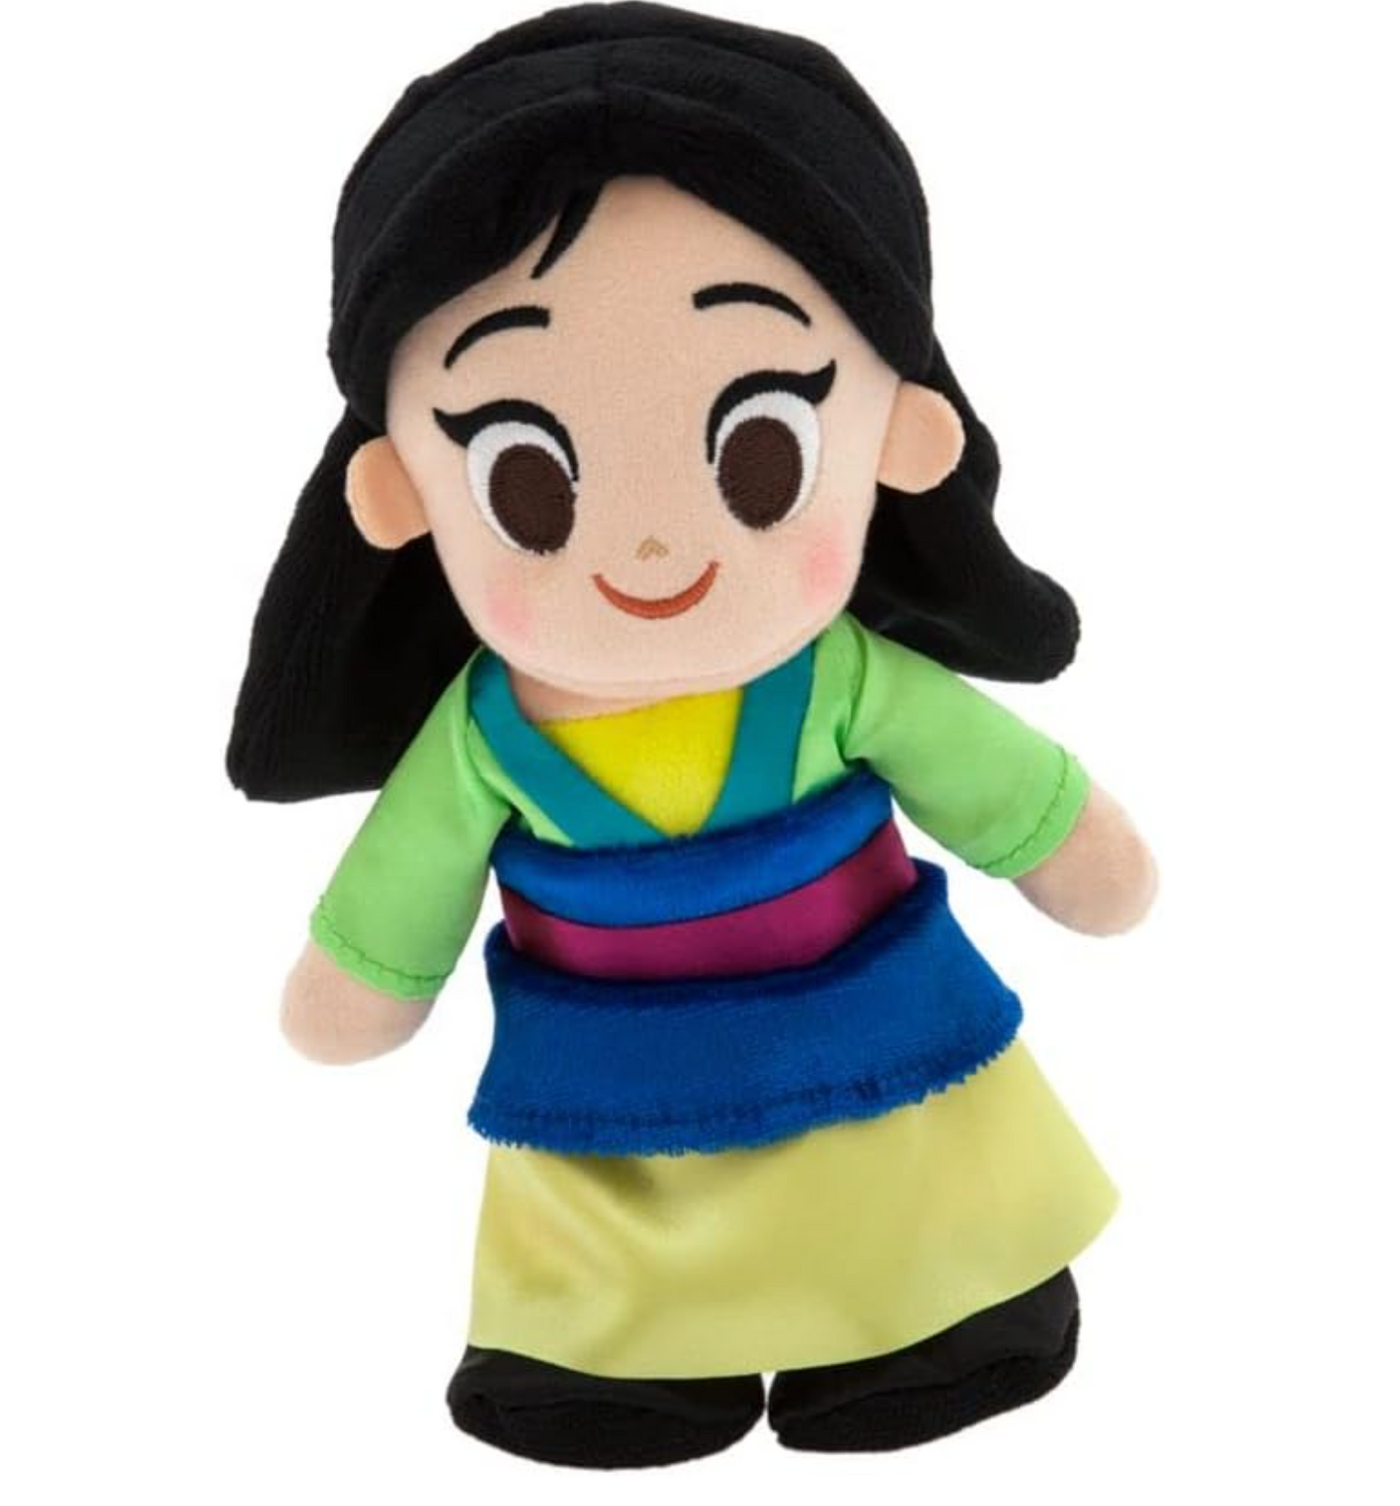 Disney NuiMOs Princess Mulan Plush New with Tag